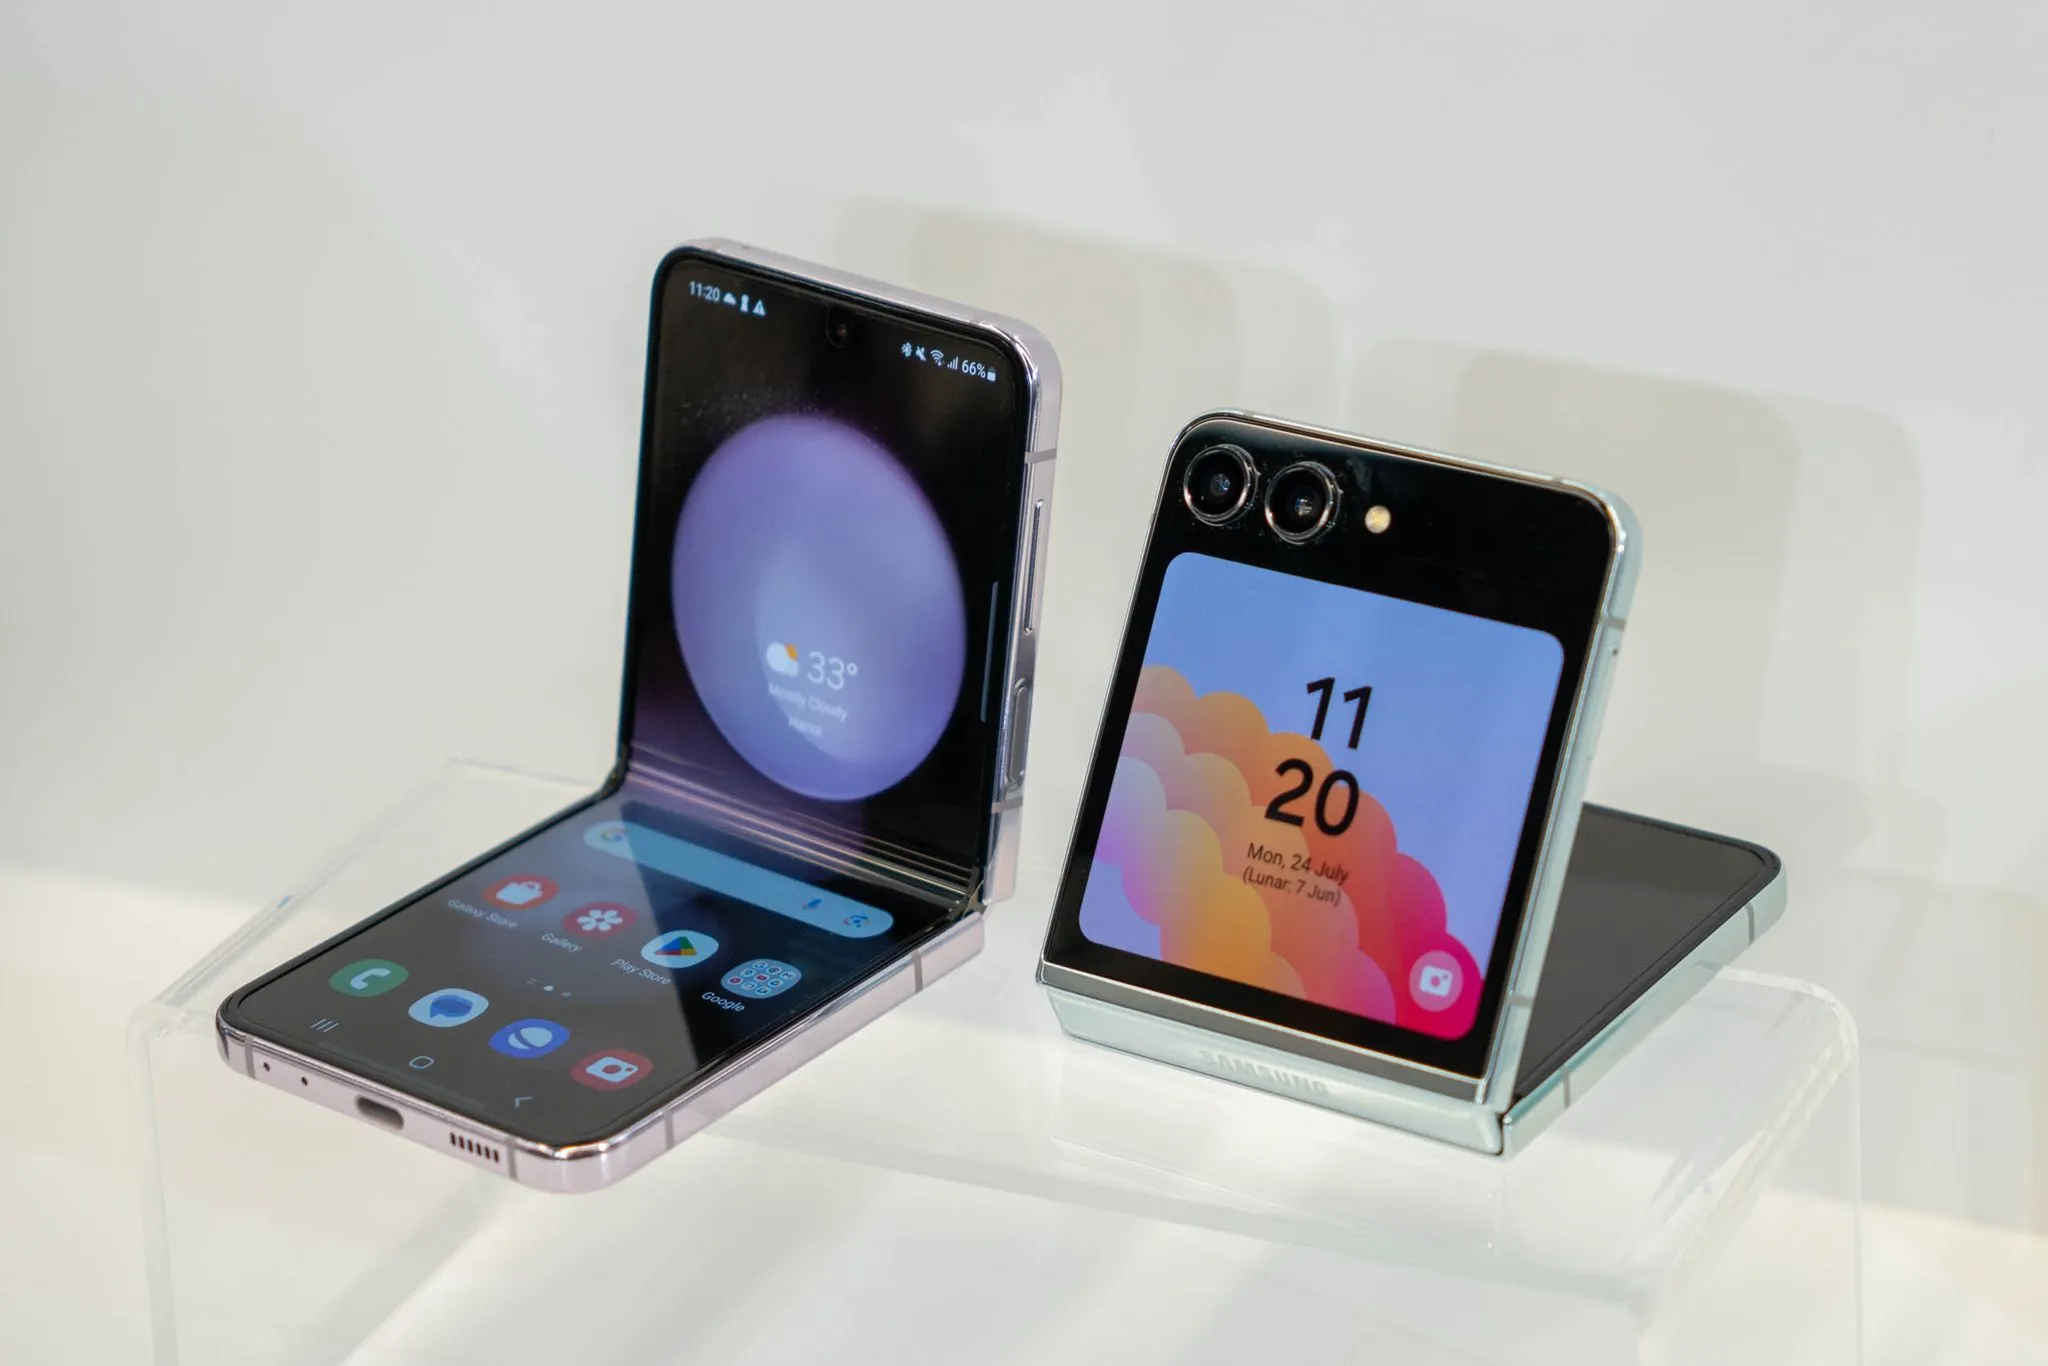 Samsung Galaxy Z thế hệ thứ 5 đạt kỷ lục đặt trước cao nhất lịch sử phân khúc điện thoại gập